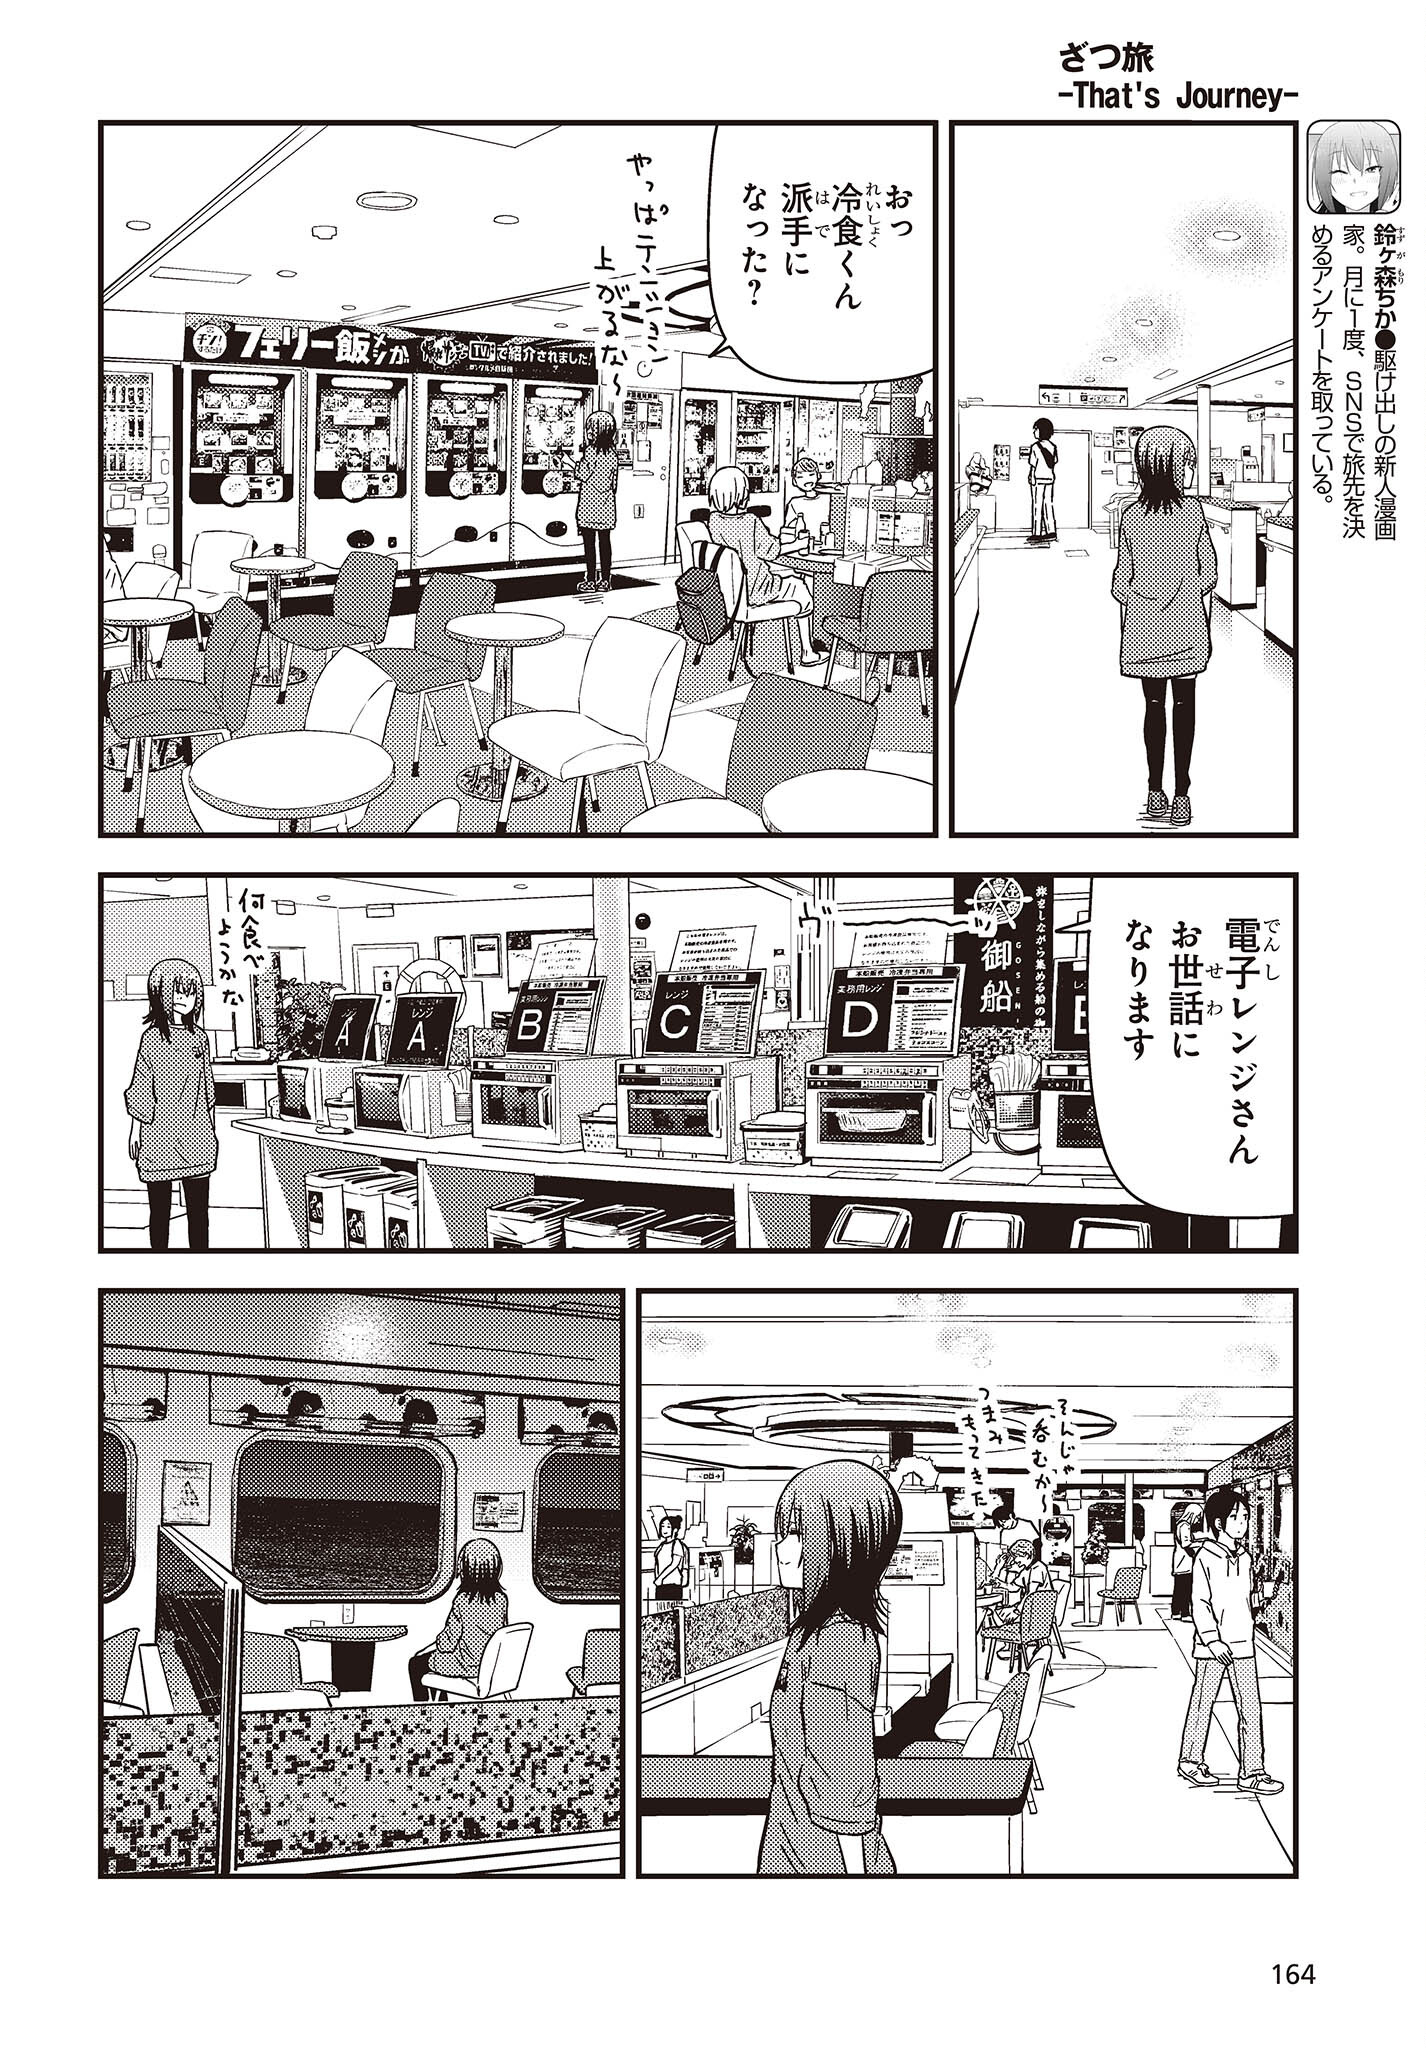 ざつ旅-That’s Journey- 第34話 - Page 4